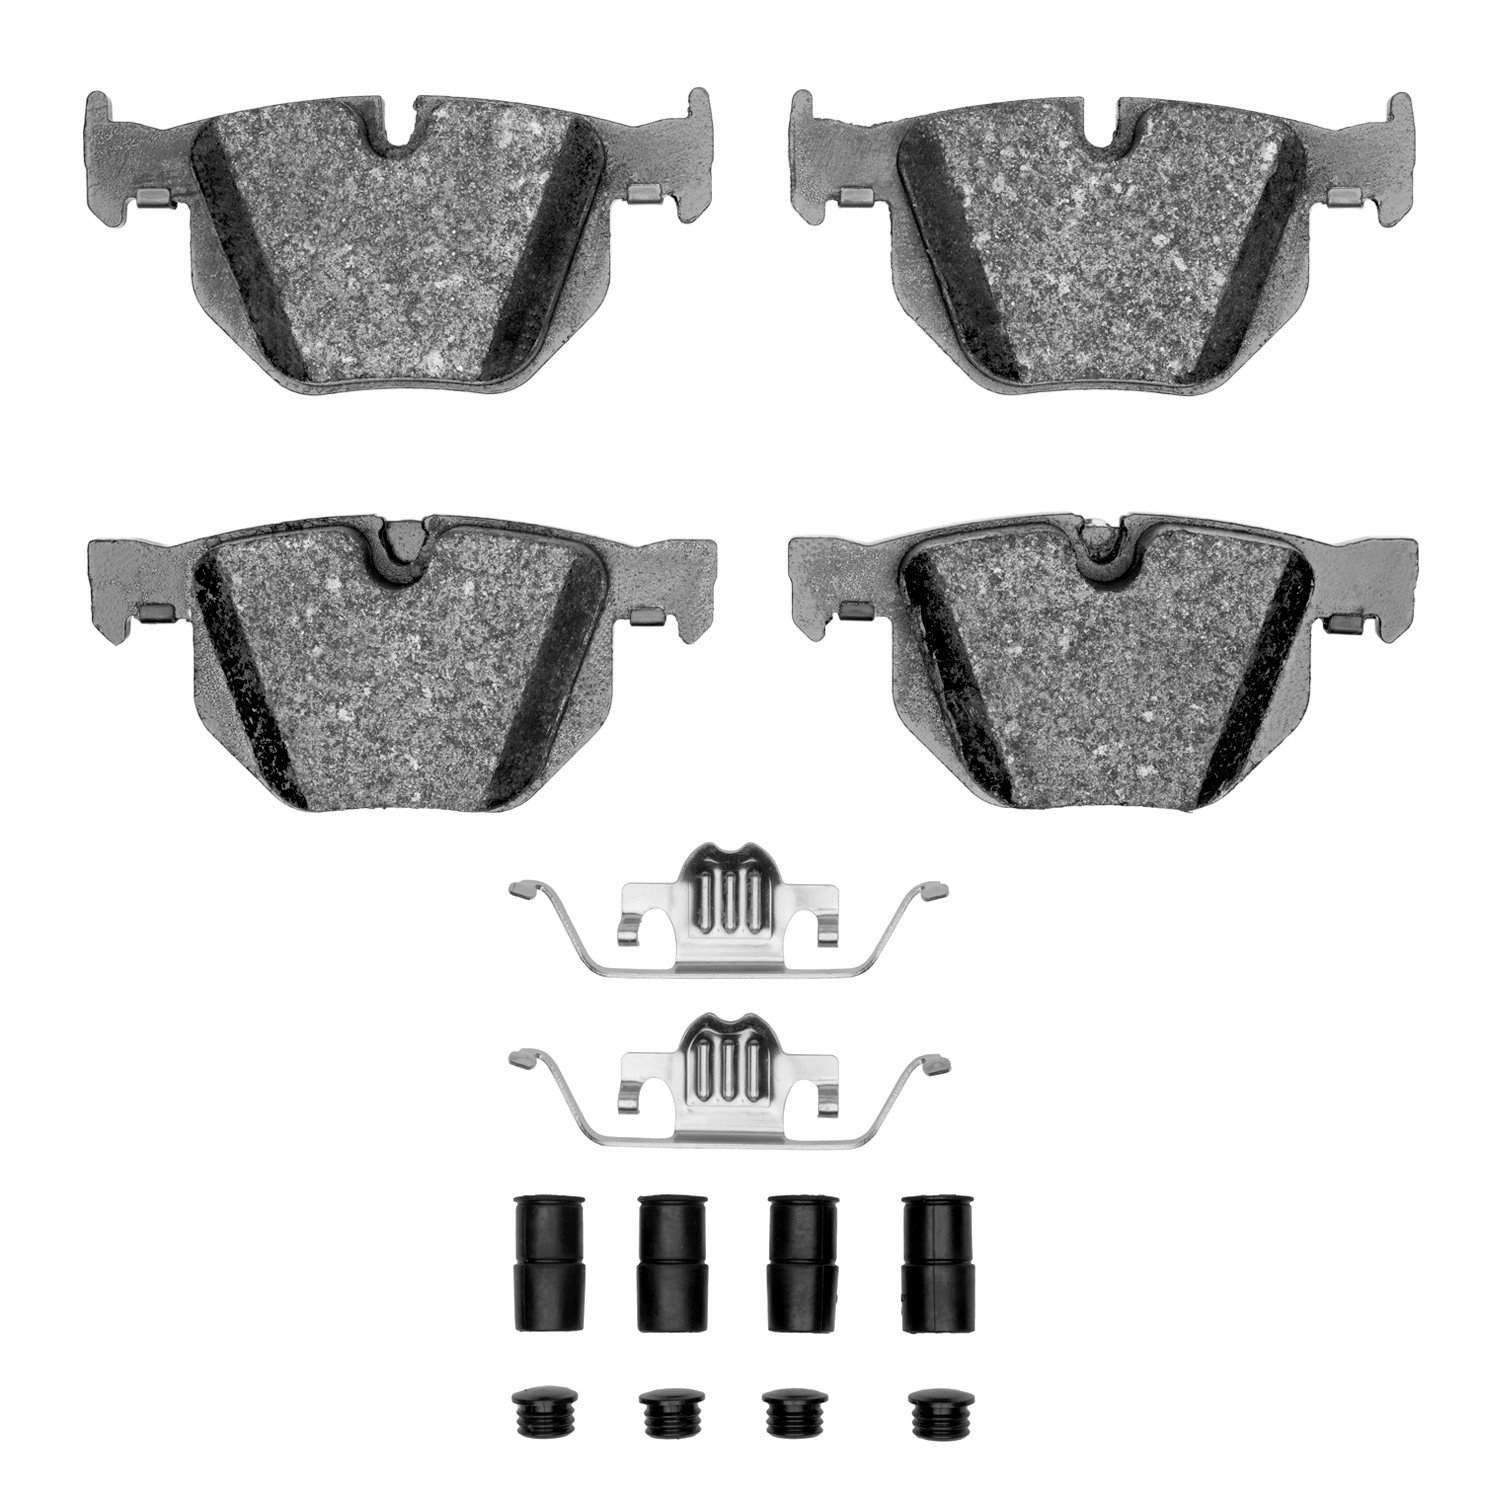 1310-0683-12 3000-Series Ceramic Brake Pads & Hardware Kit, 2004-2010 BMW, Position: Rear